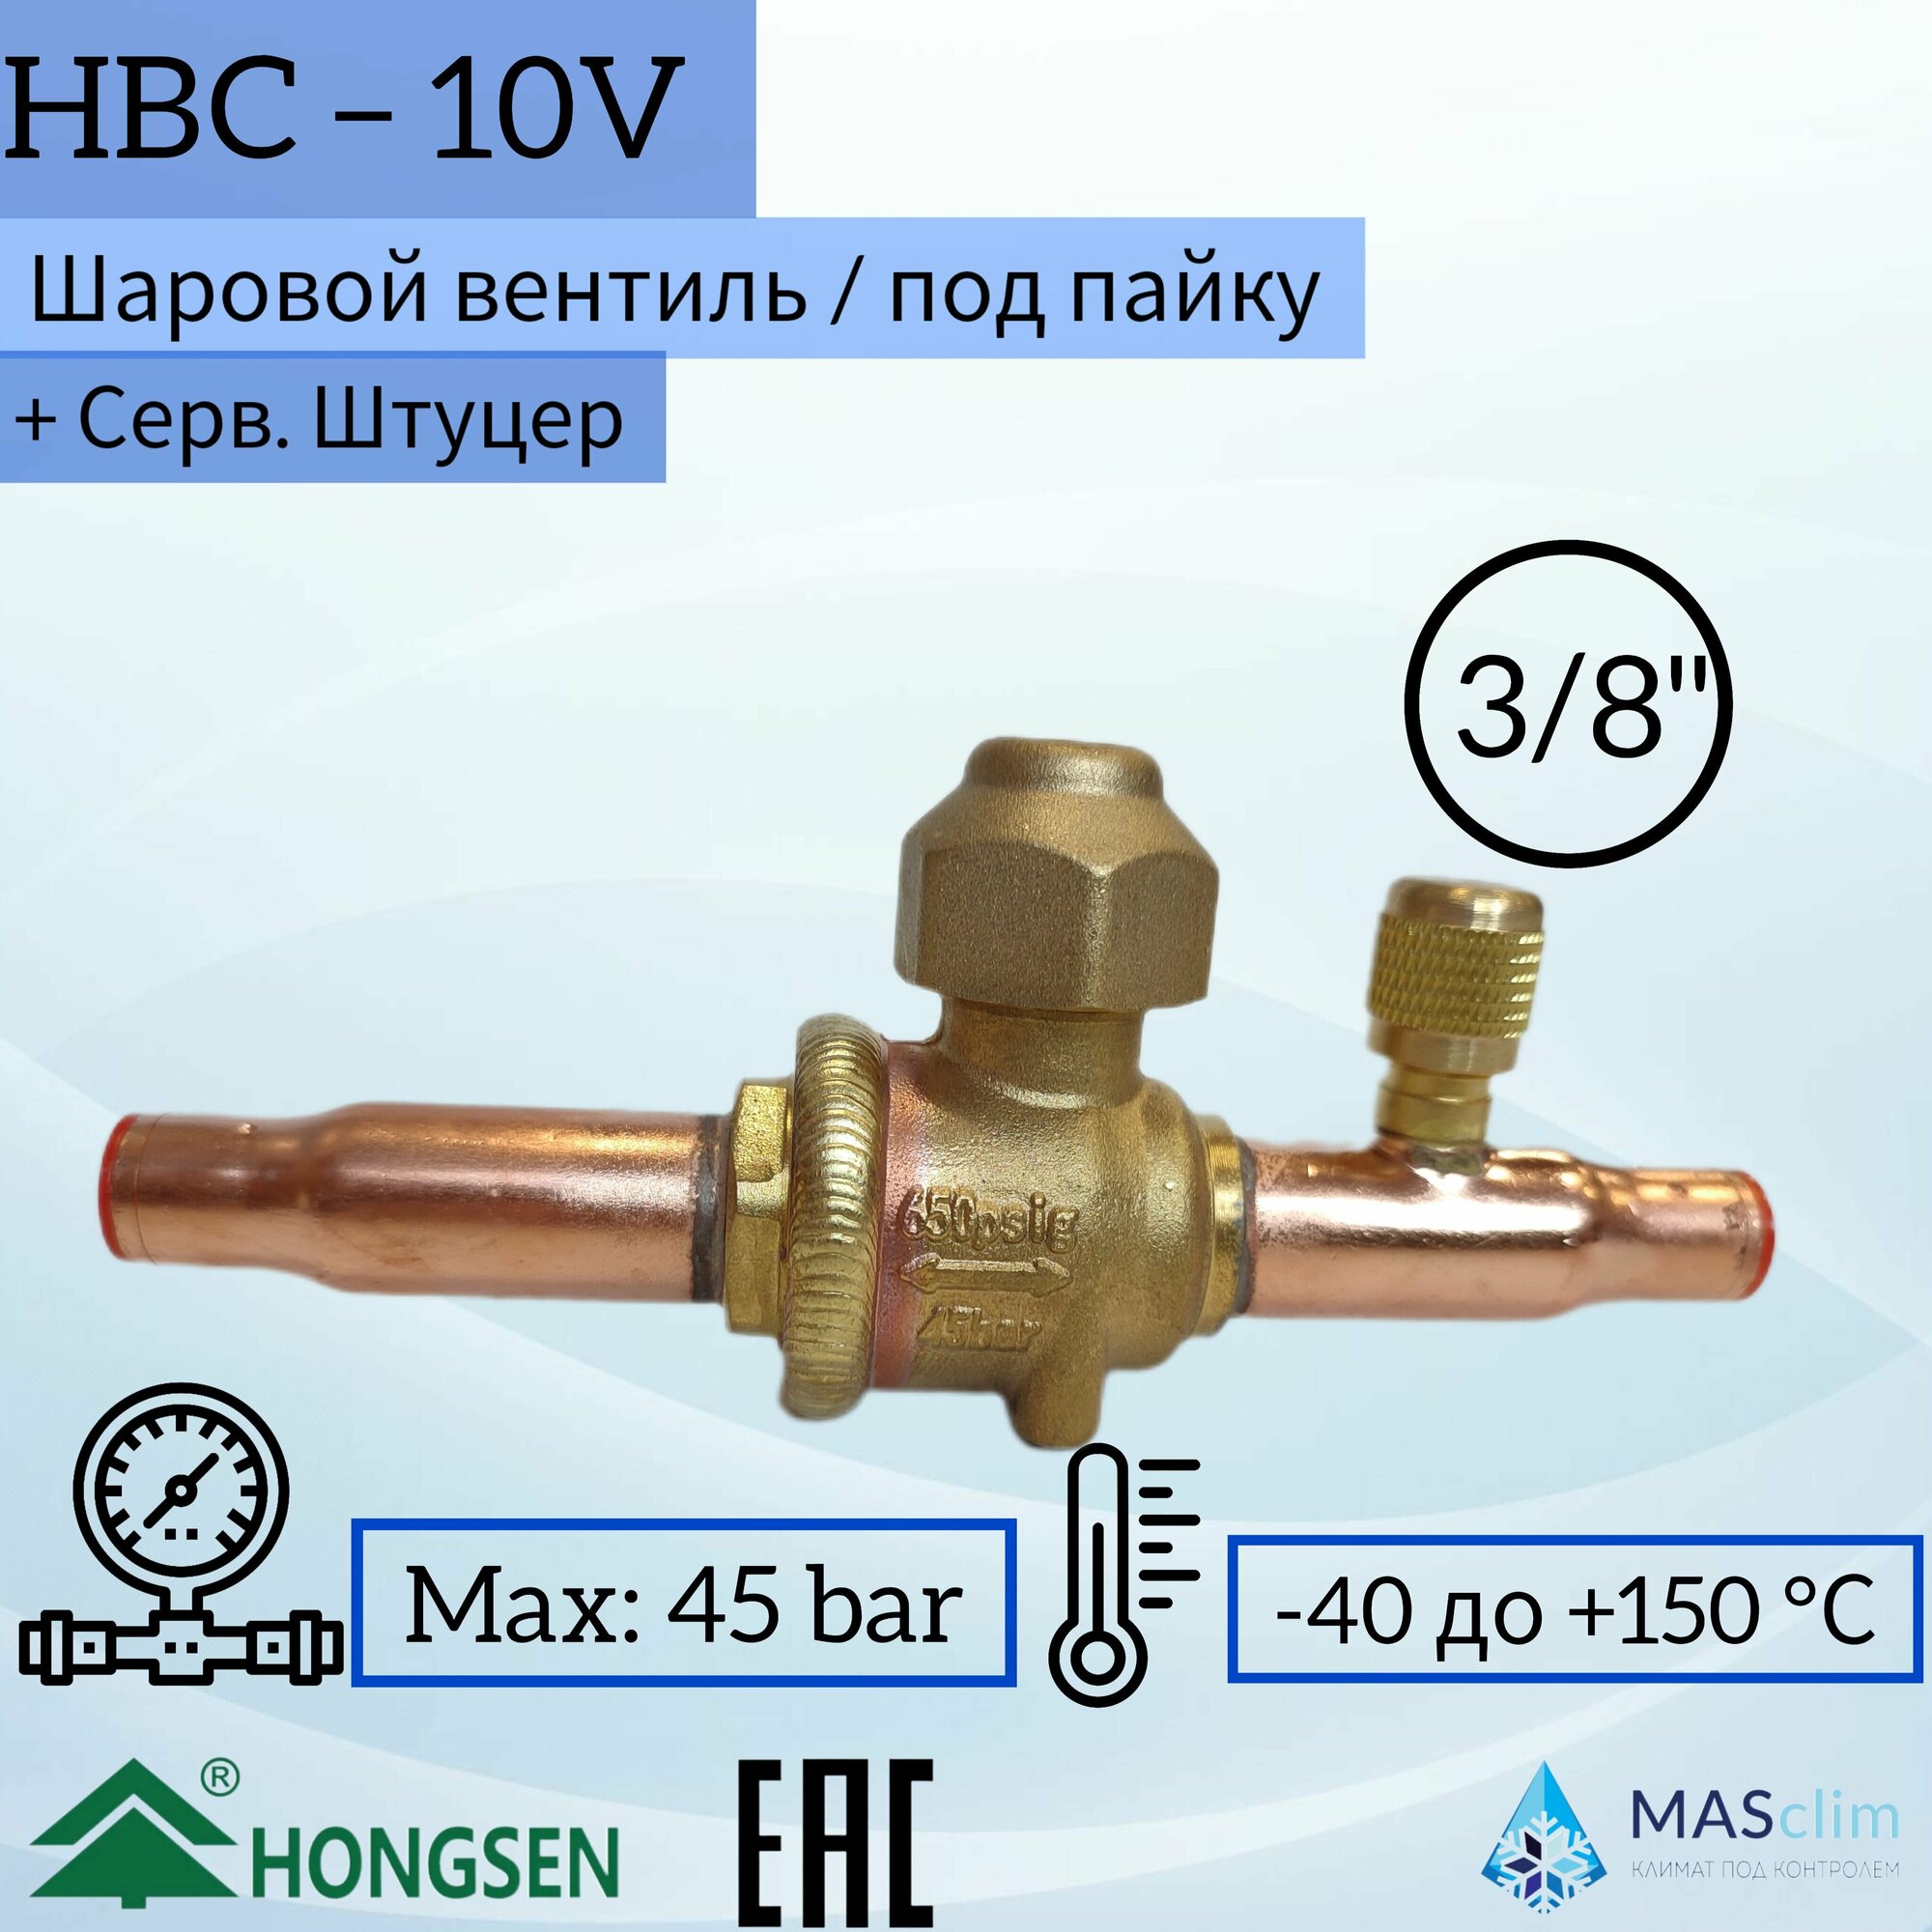 Шаровой кран Hongsen HBC-10V, 3/8, пайка, сервисный штуцер